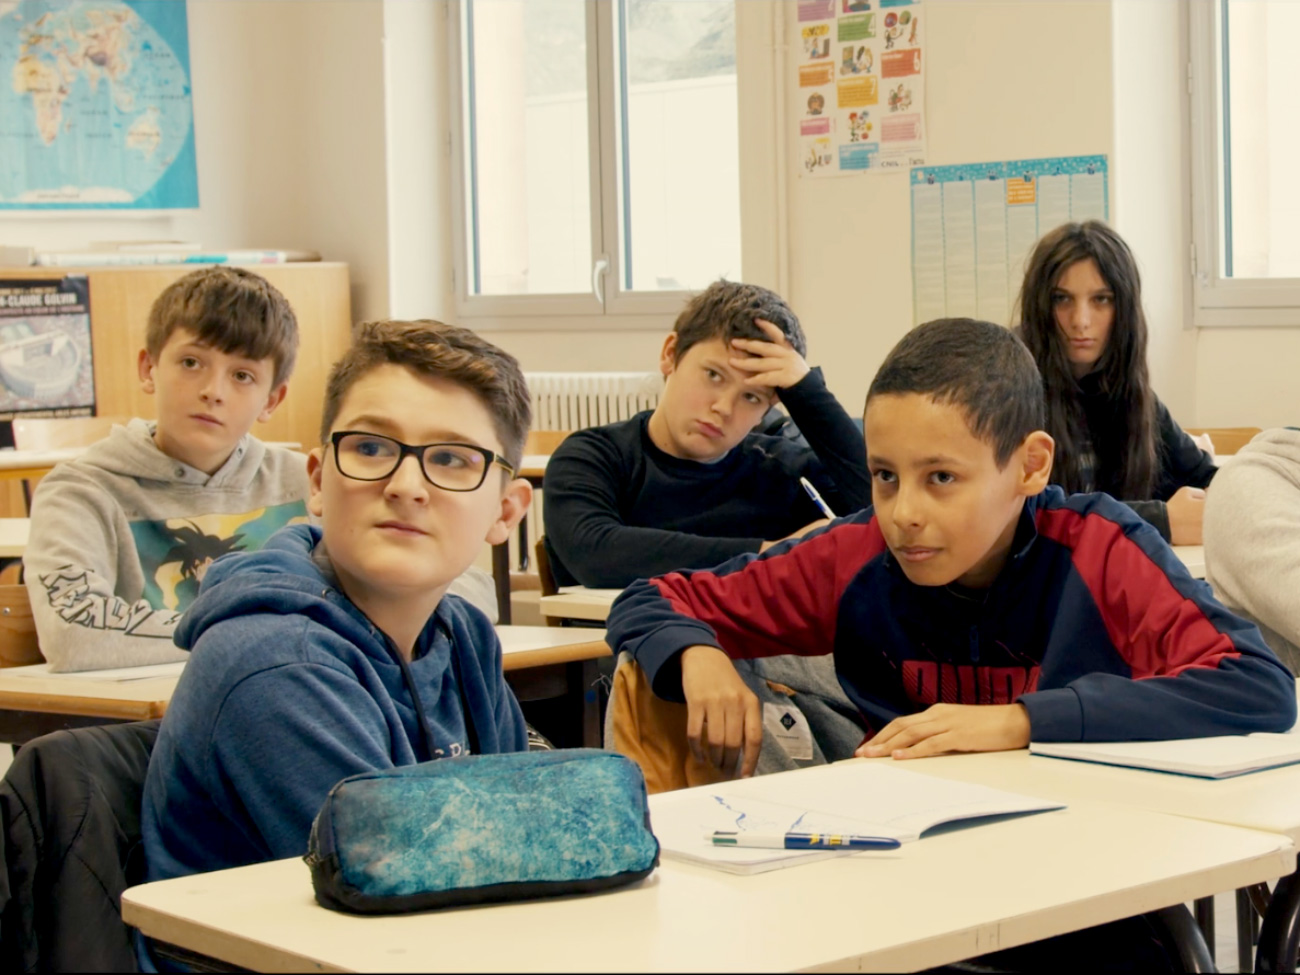 © La clé du respect, film réalisé par les élèves du collège Gassendi, Digne-les-Bains